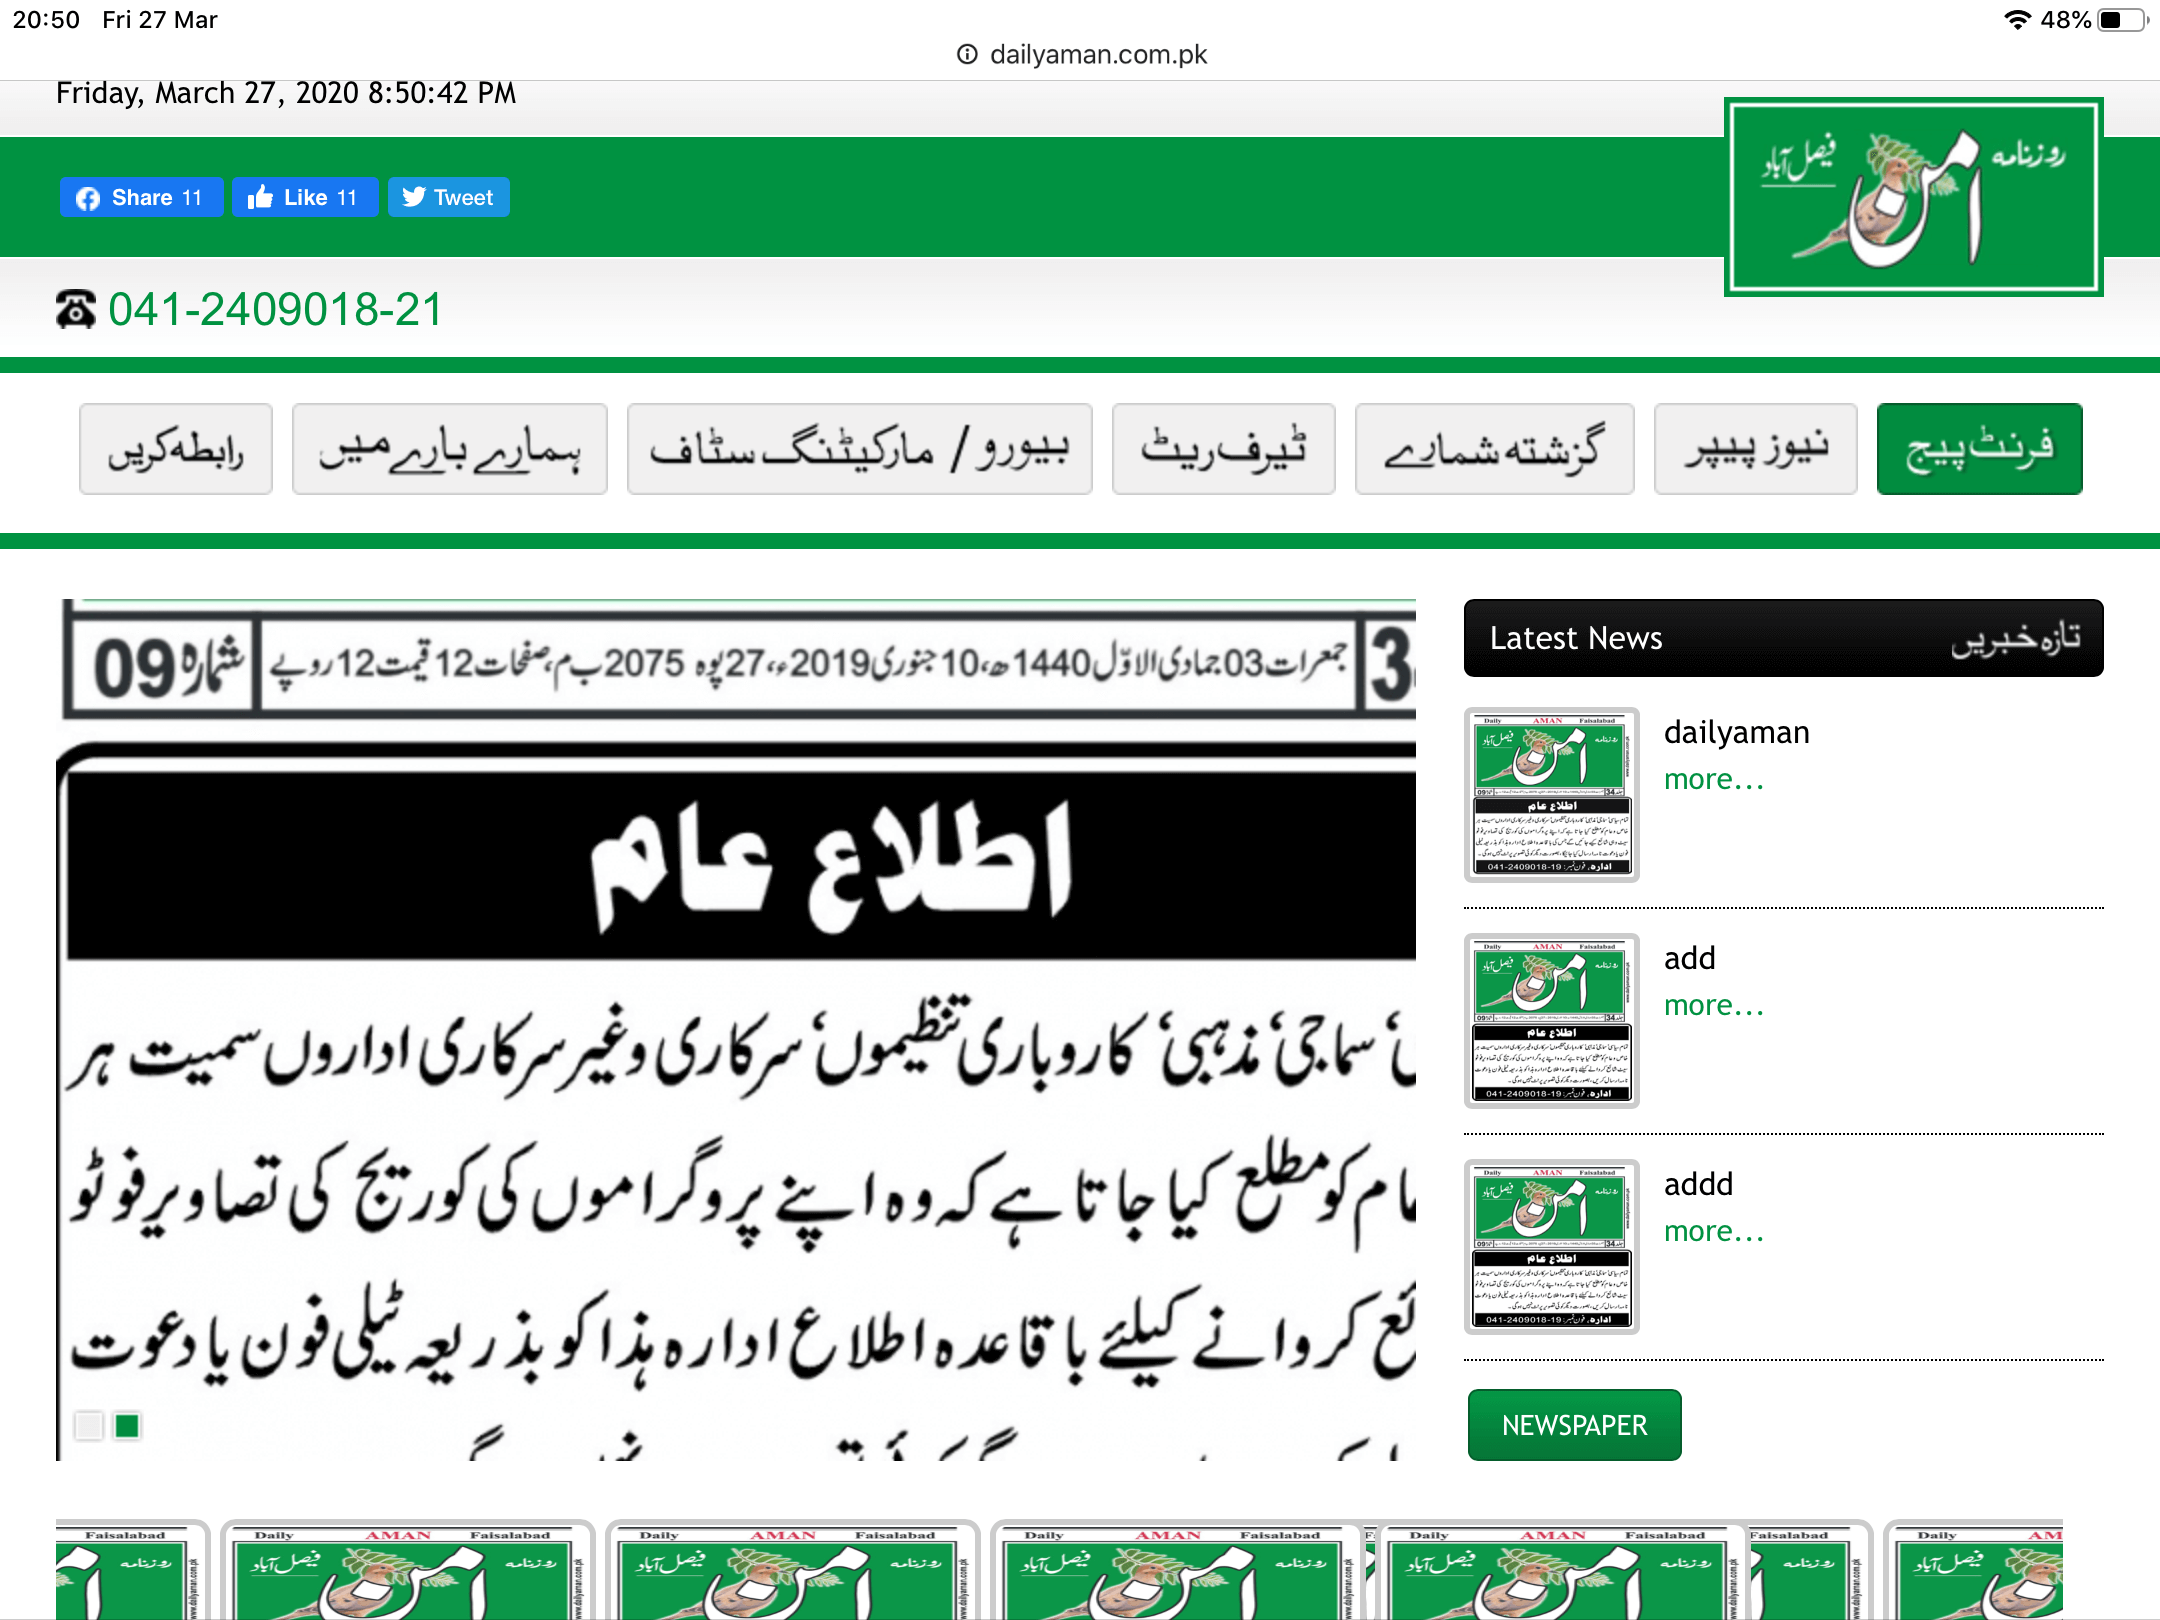 pakistan urdu newspapers 31 daily aman website